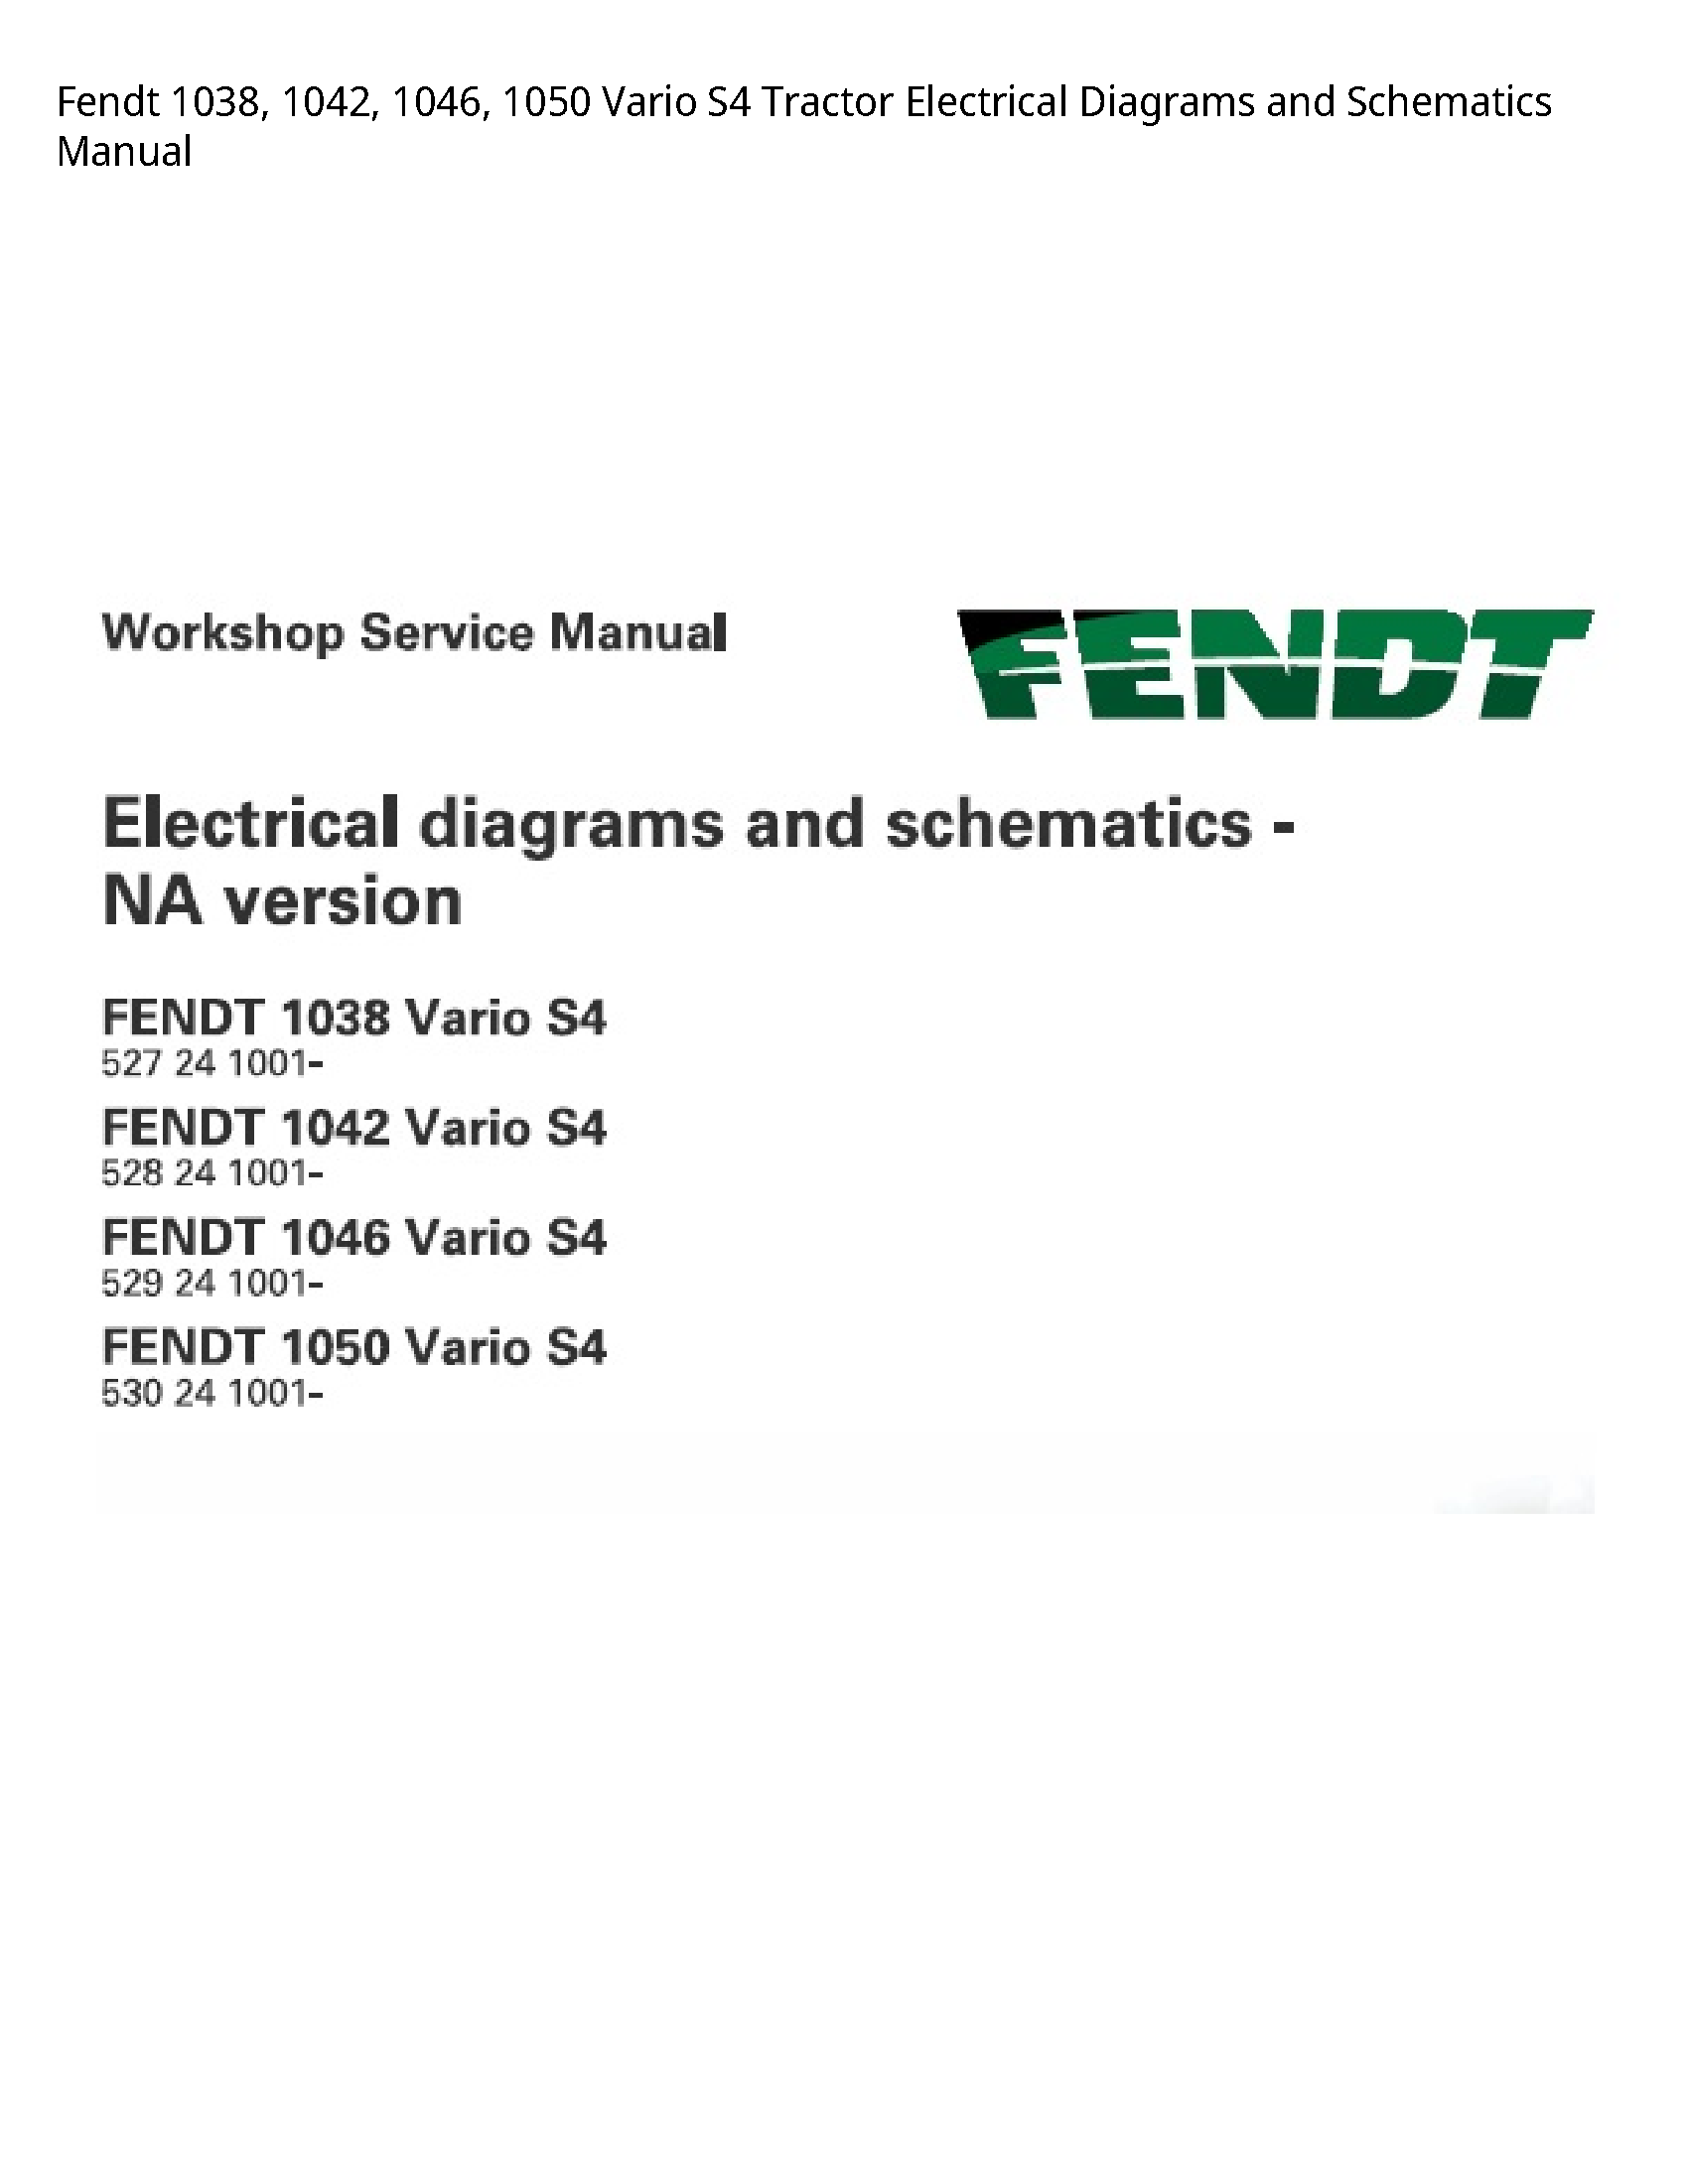 Fendt 1038 Vario Tractor Electrical Diagrams  Schematics manual